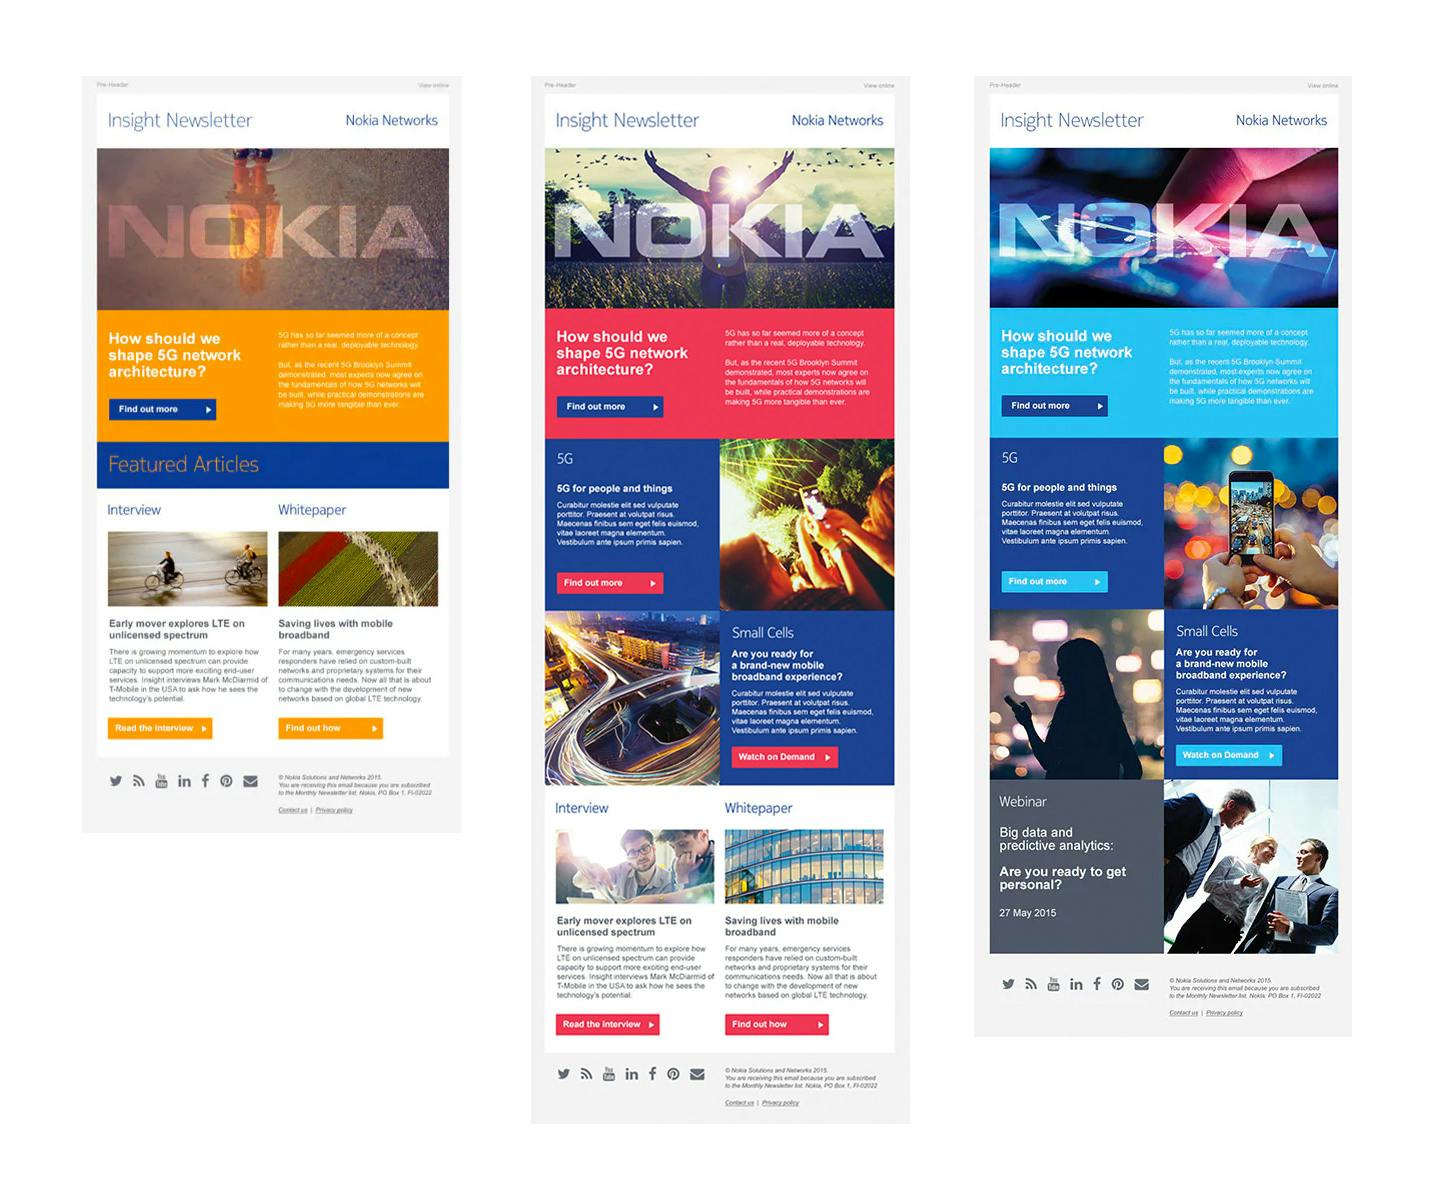 Nokia Insight Newsletter